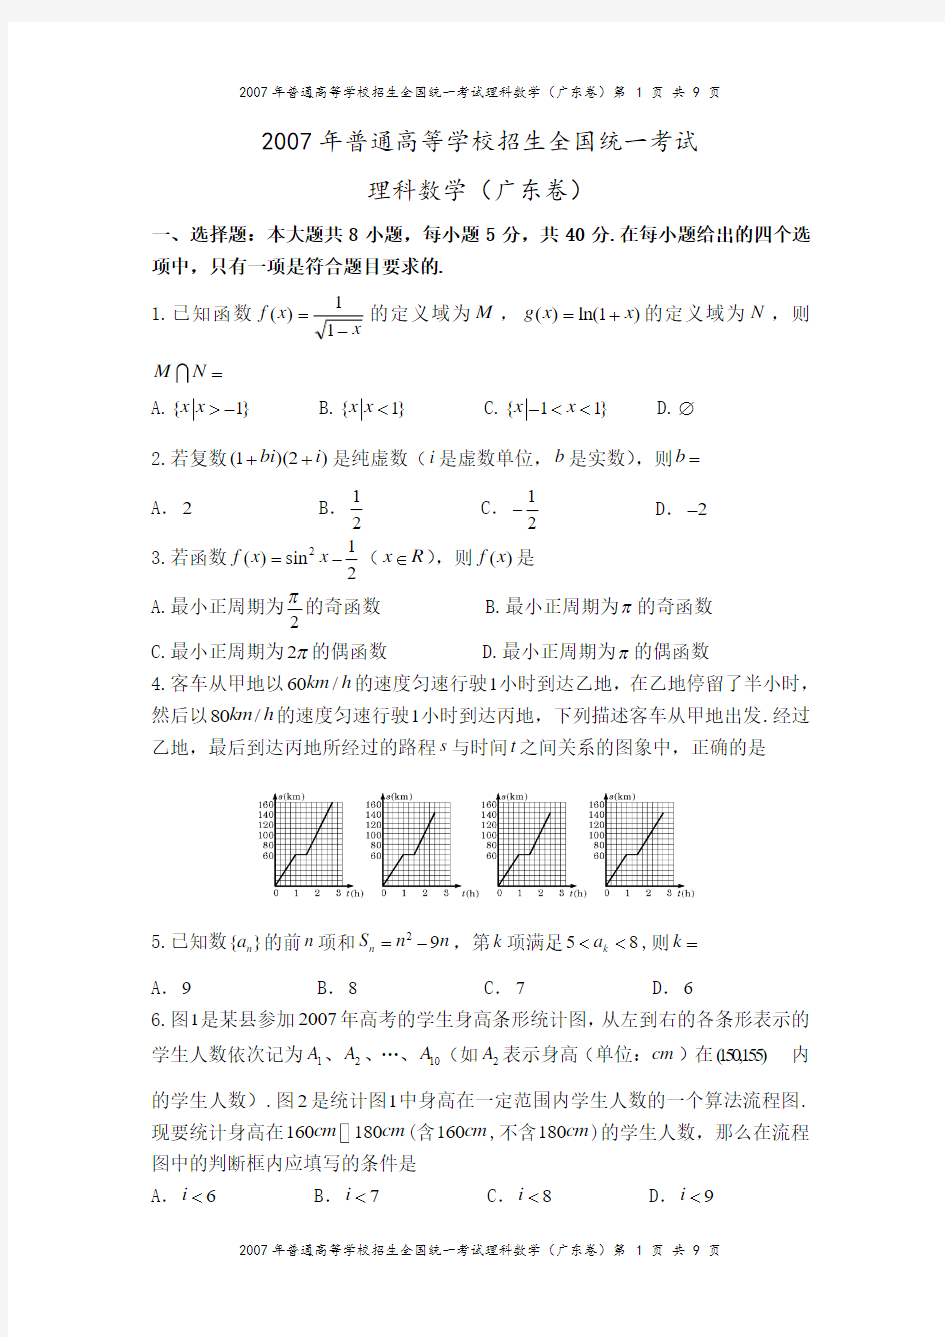 2007年高考广东卷(理科数学)